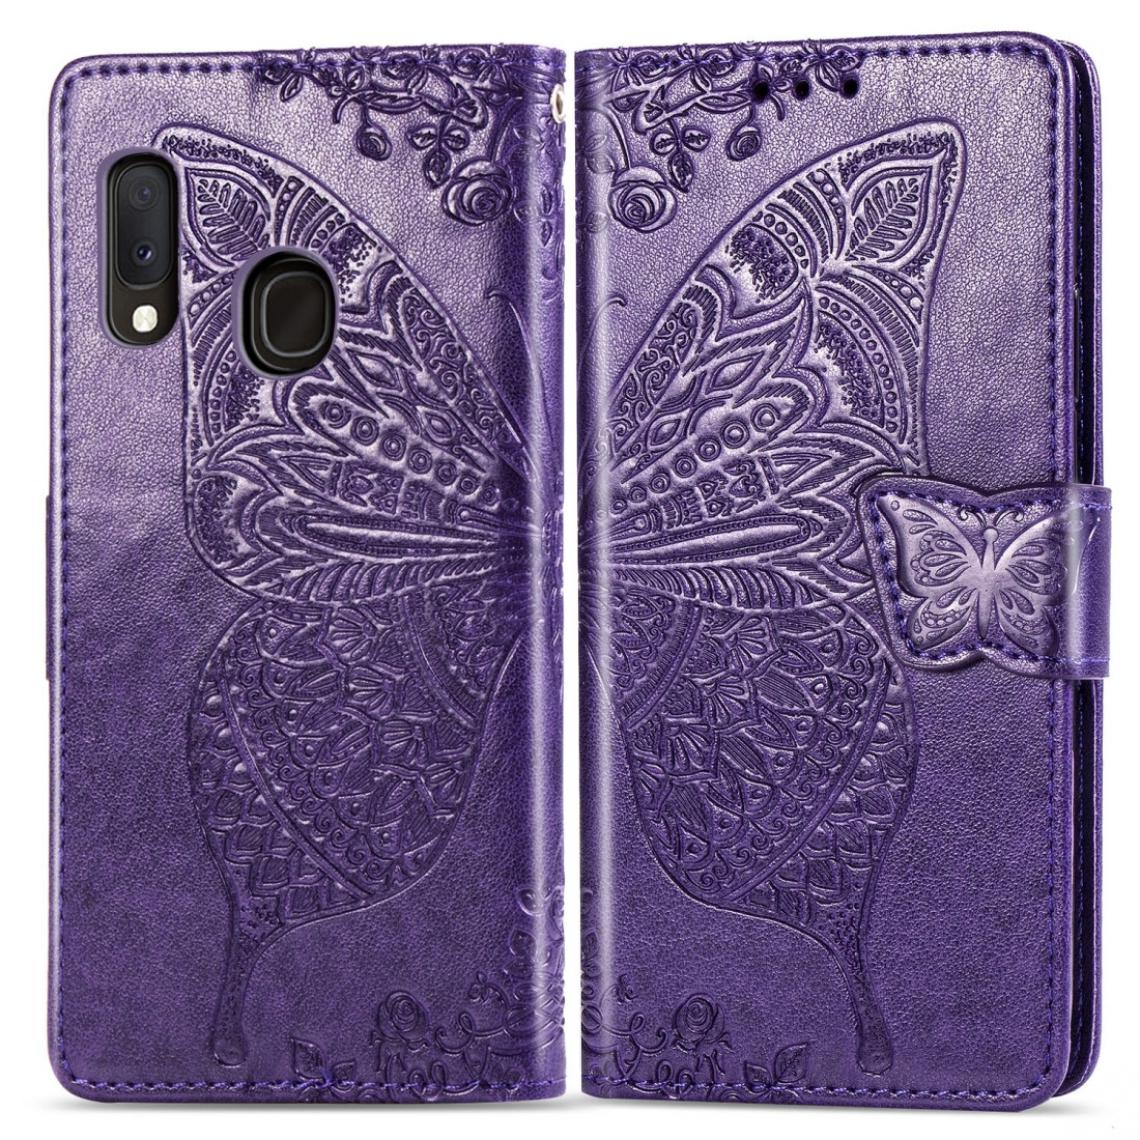 Wewoo - Housse Coque Pour Galaxy A20e Butterfly Love Flowers gaufrage Etui à rabat horizontal avec porte-cartes et porte-cartesporte-monnaie et lanière violet foncé - Coque, étui smartphone